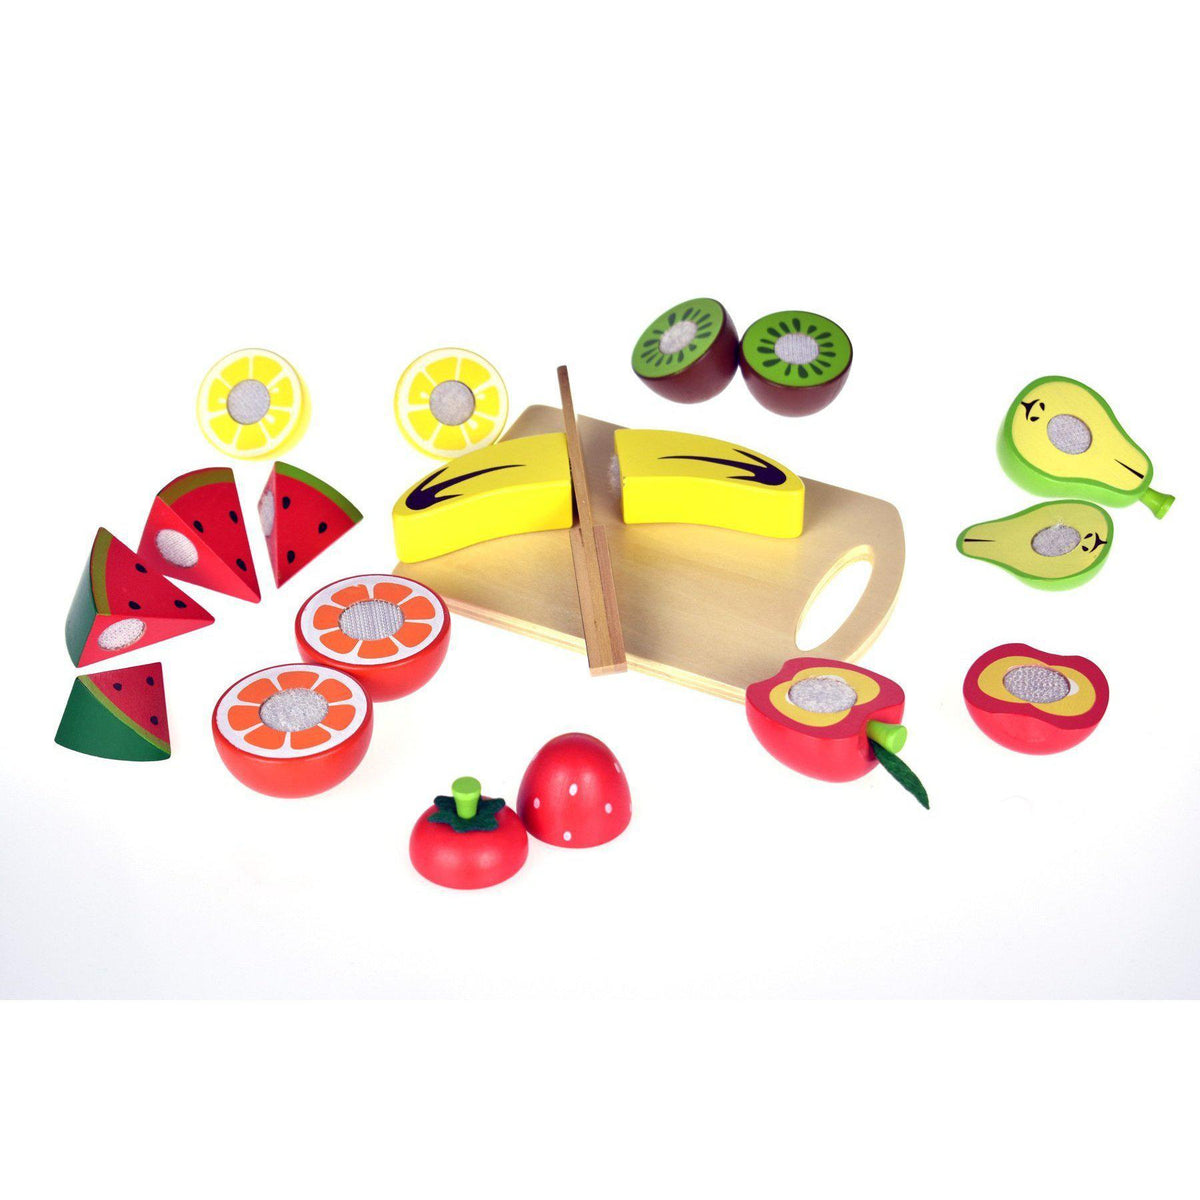 New fruits blox fruits. BLOX Fruits фрукты. Tooky Toy игровой набор фрукты. BLOX Fruits аксессуары для фруктов. Контроль Блокс фрукт.